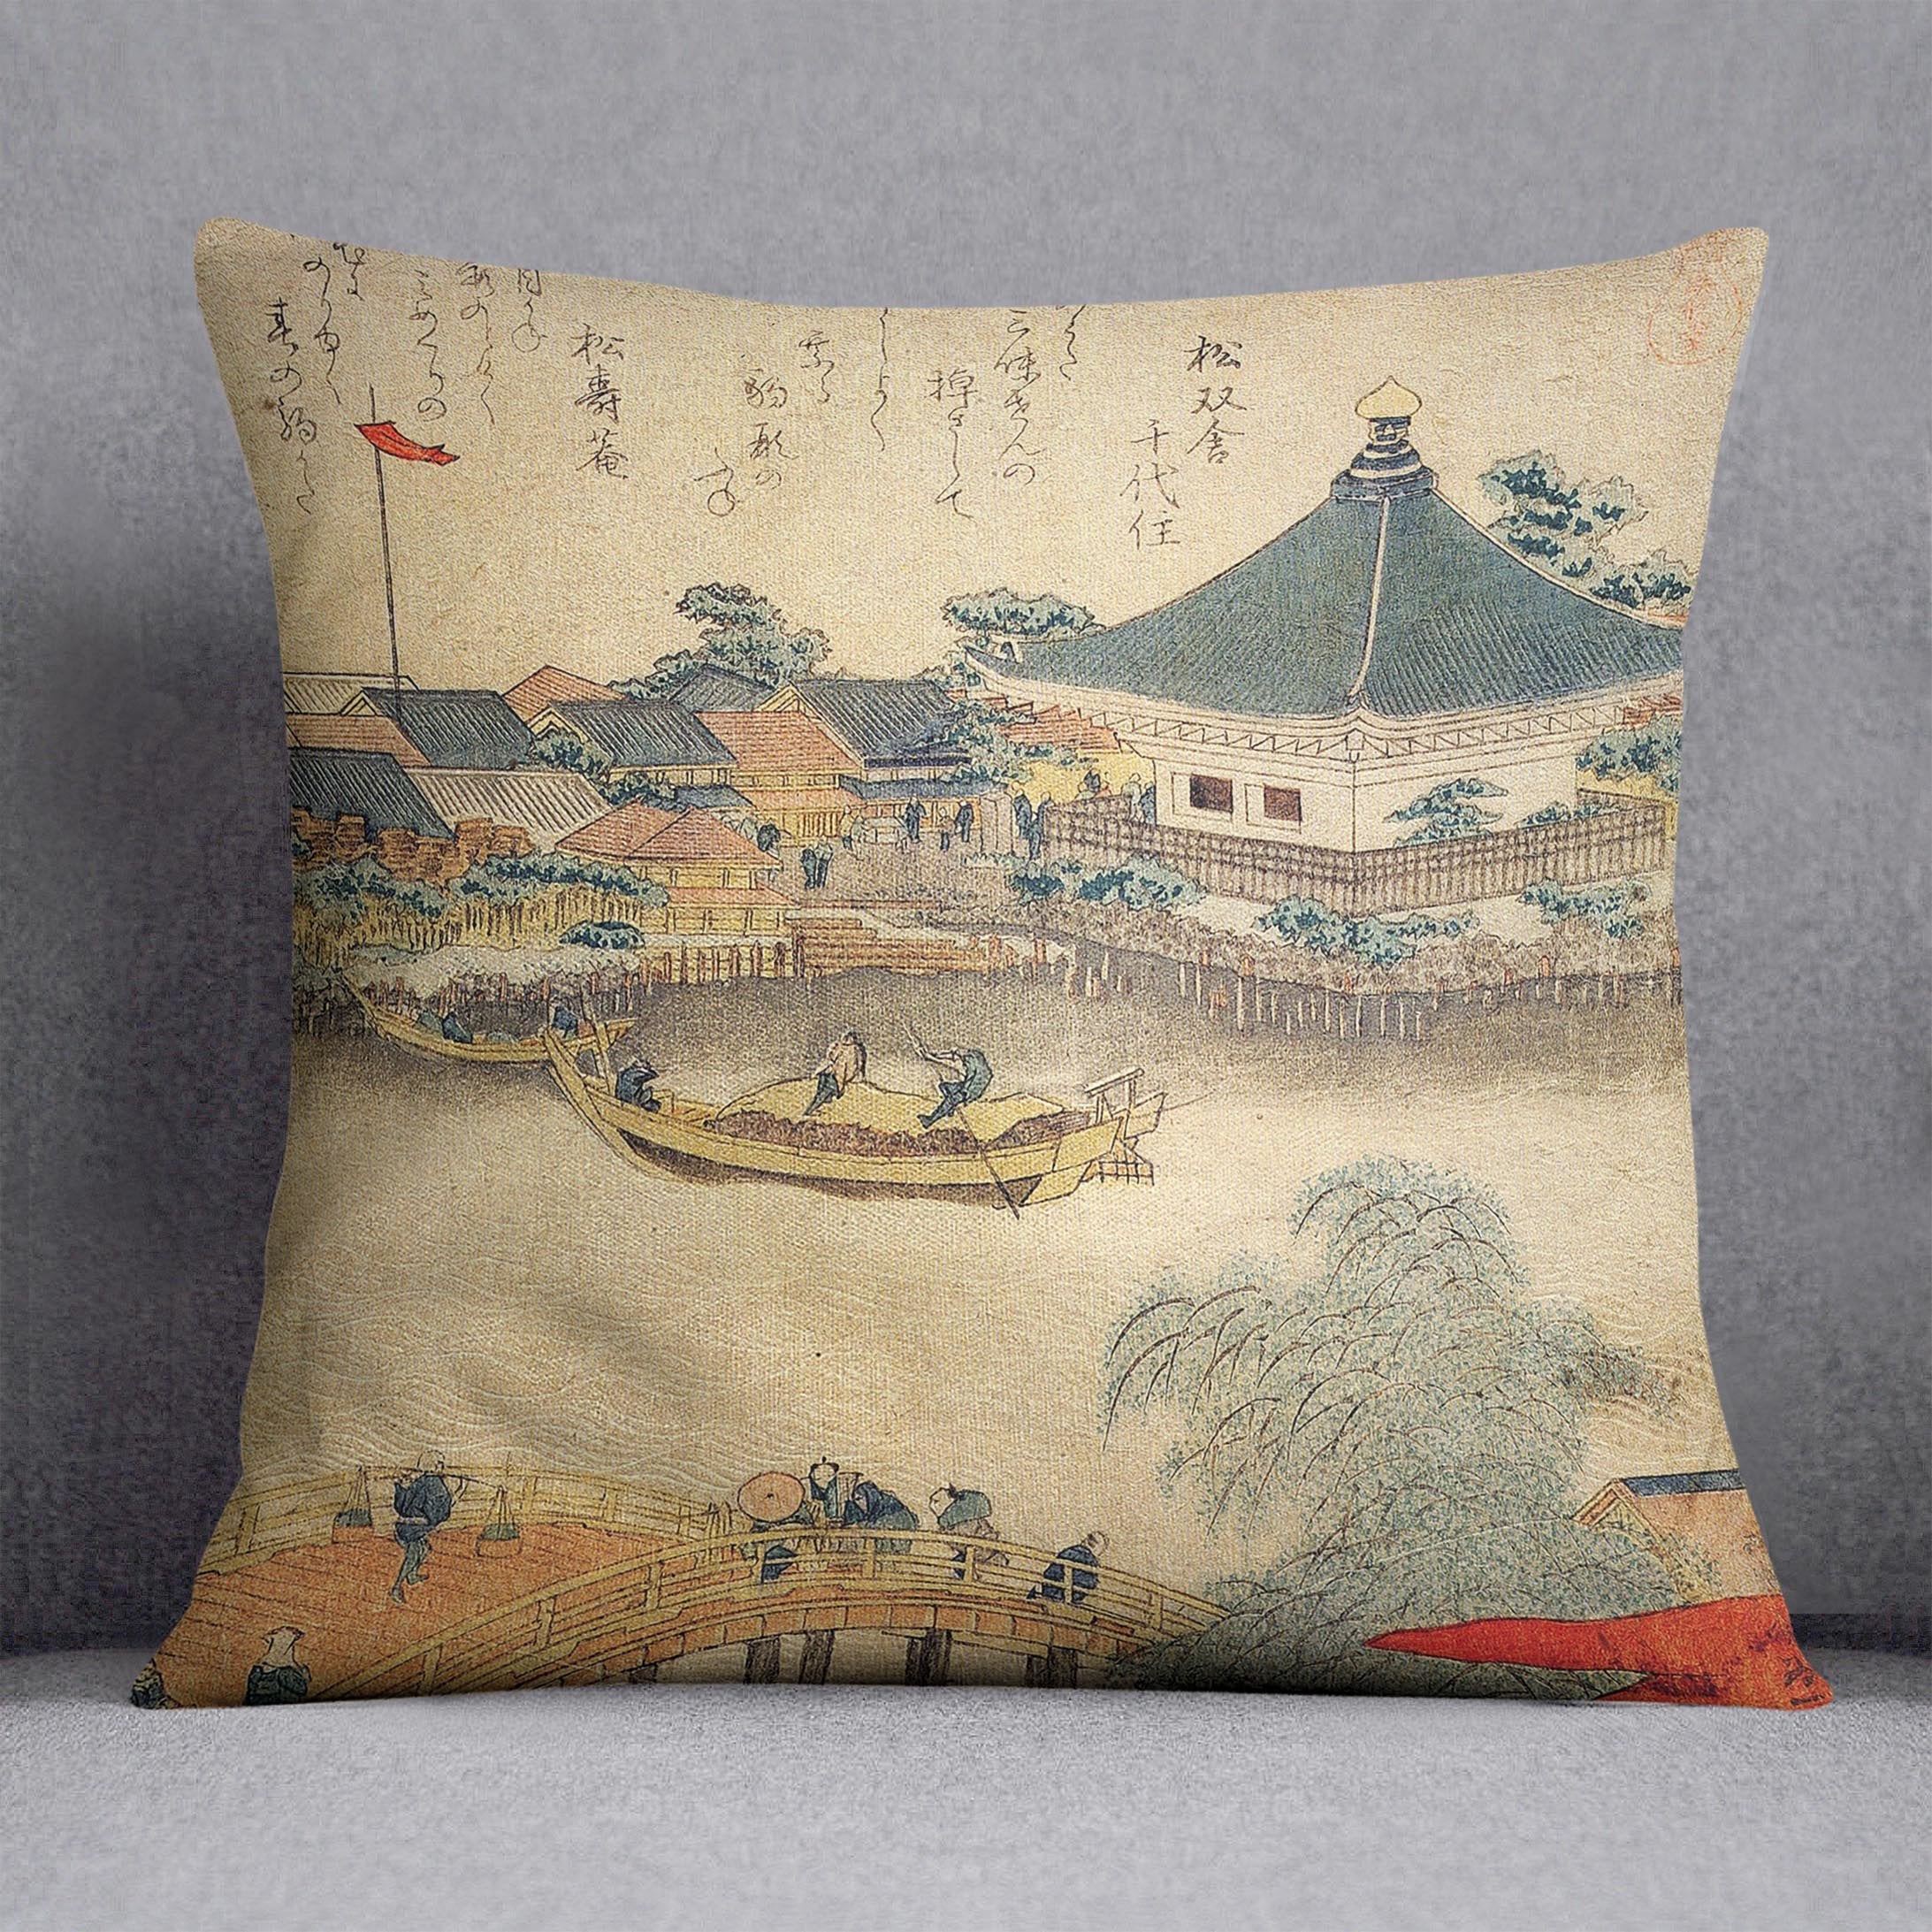 The Shrine Komagata Do in Komagata by Hokusai Throw Pillow